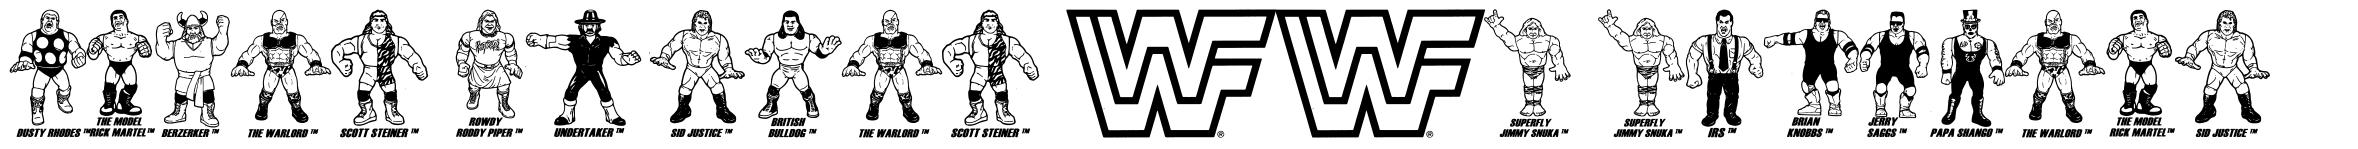 Retro Hasbro WWF Figures шрифт